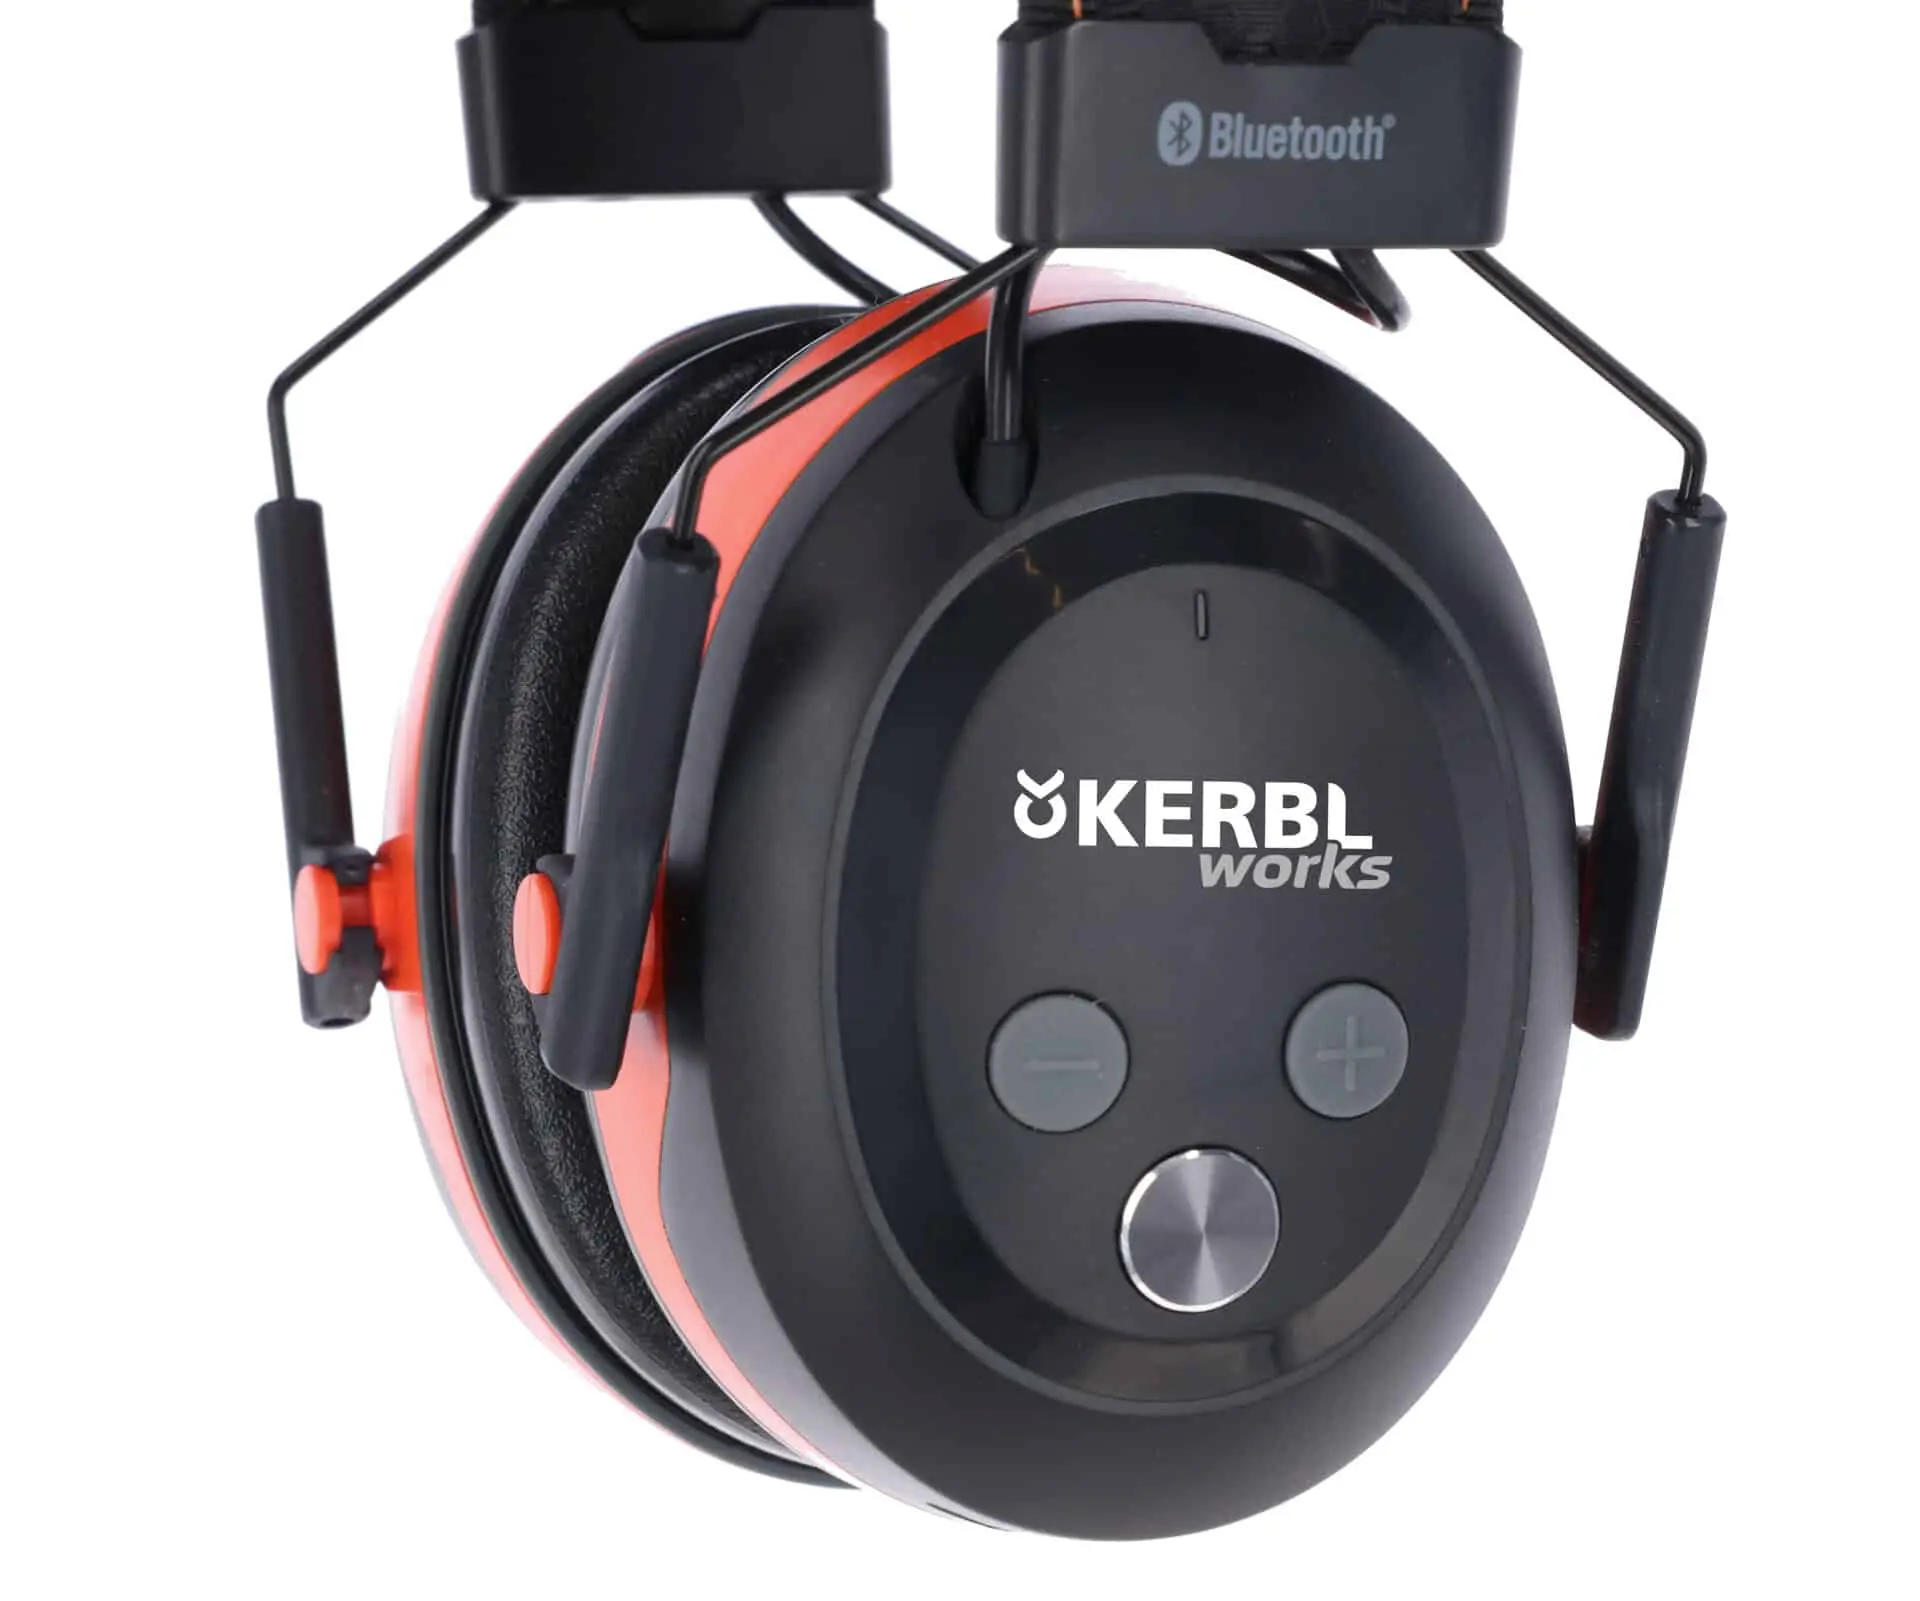 Brusreducerande headset med Bluetooth